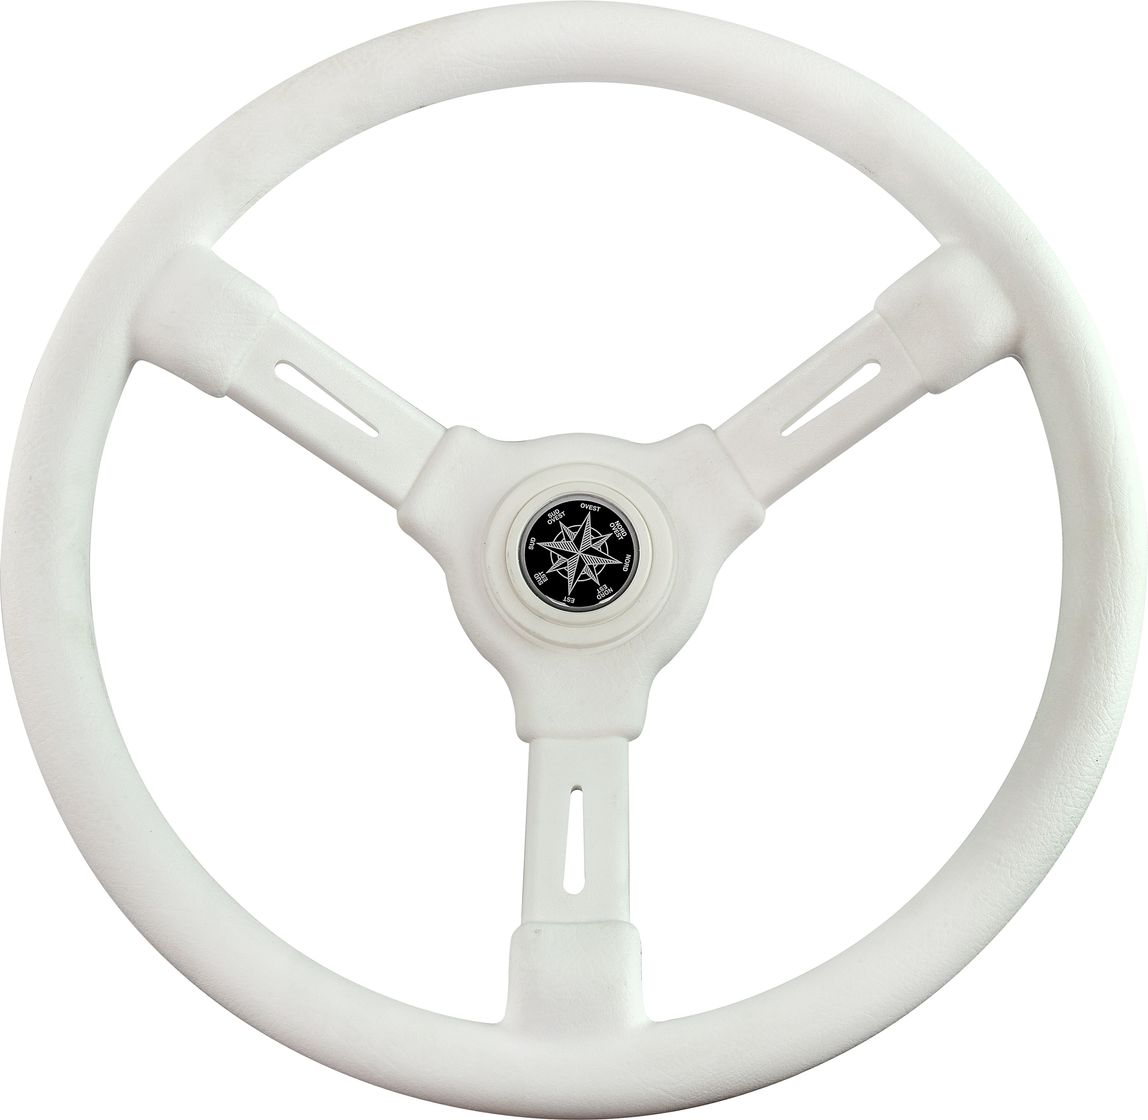 Рулевое колесо RIVIERA белый обод и спицы д. 350 мм VN8001-08 рулевое колесо evolution обод с серебристыми вставками more 10016467